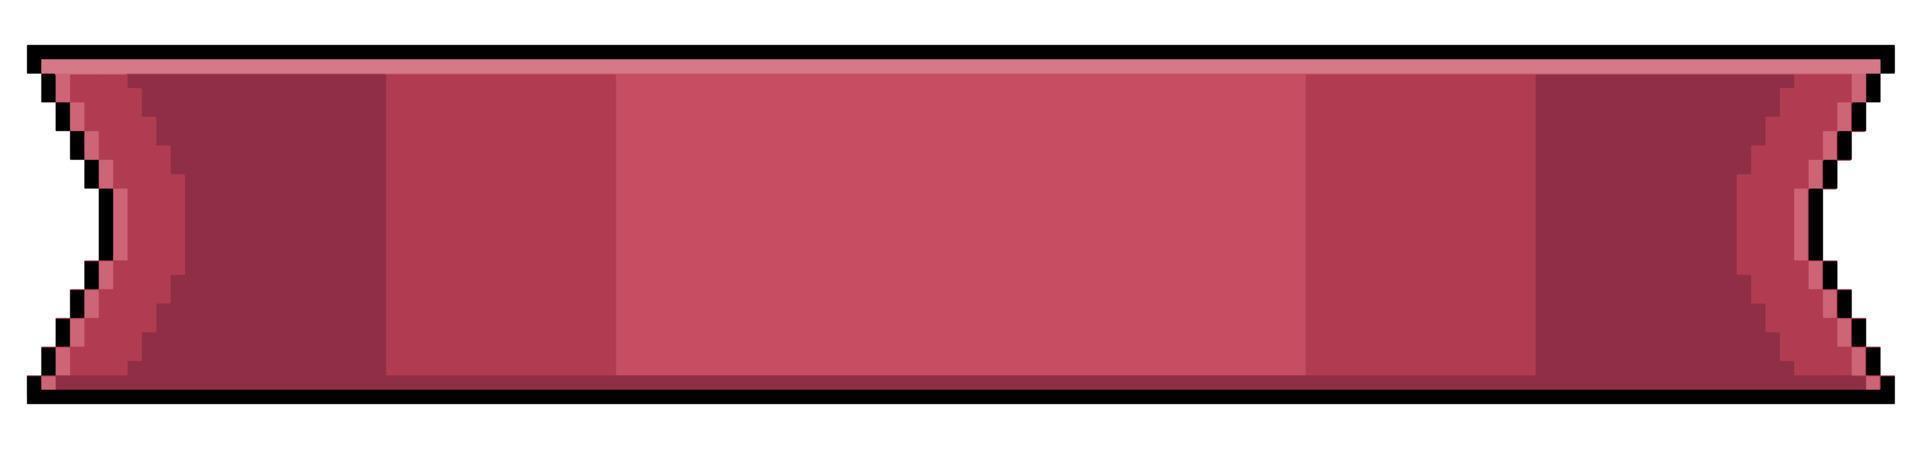 pixel art bande rouge. icône de vecteur de bande rouge pour le jeu 8bit sur fond blanc